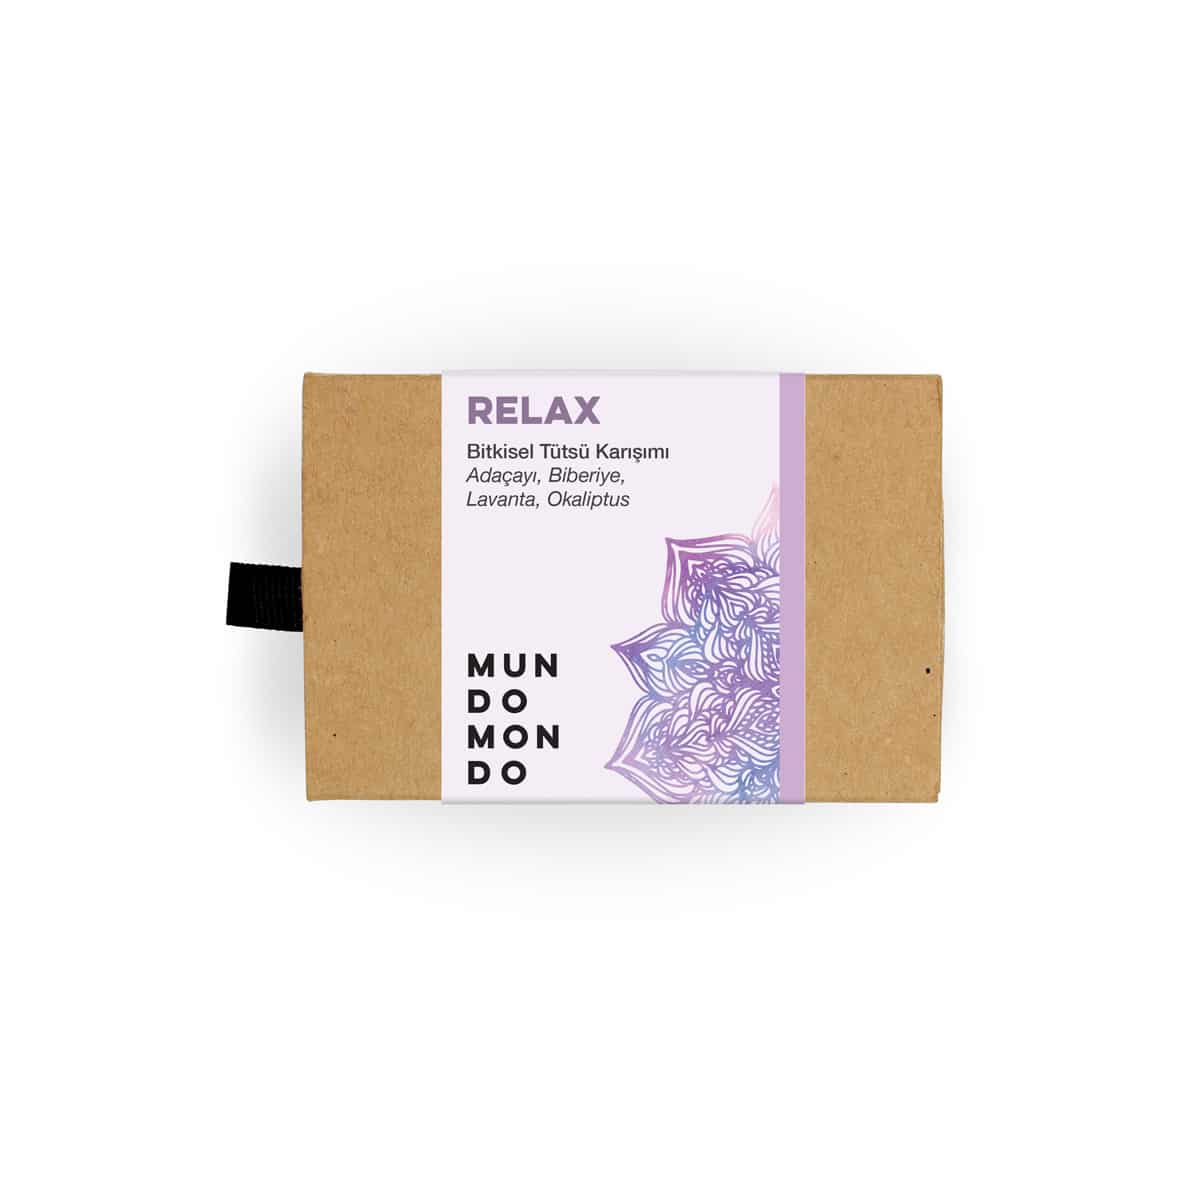 Relax | Bitkisel Tütsü Karışımı